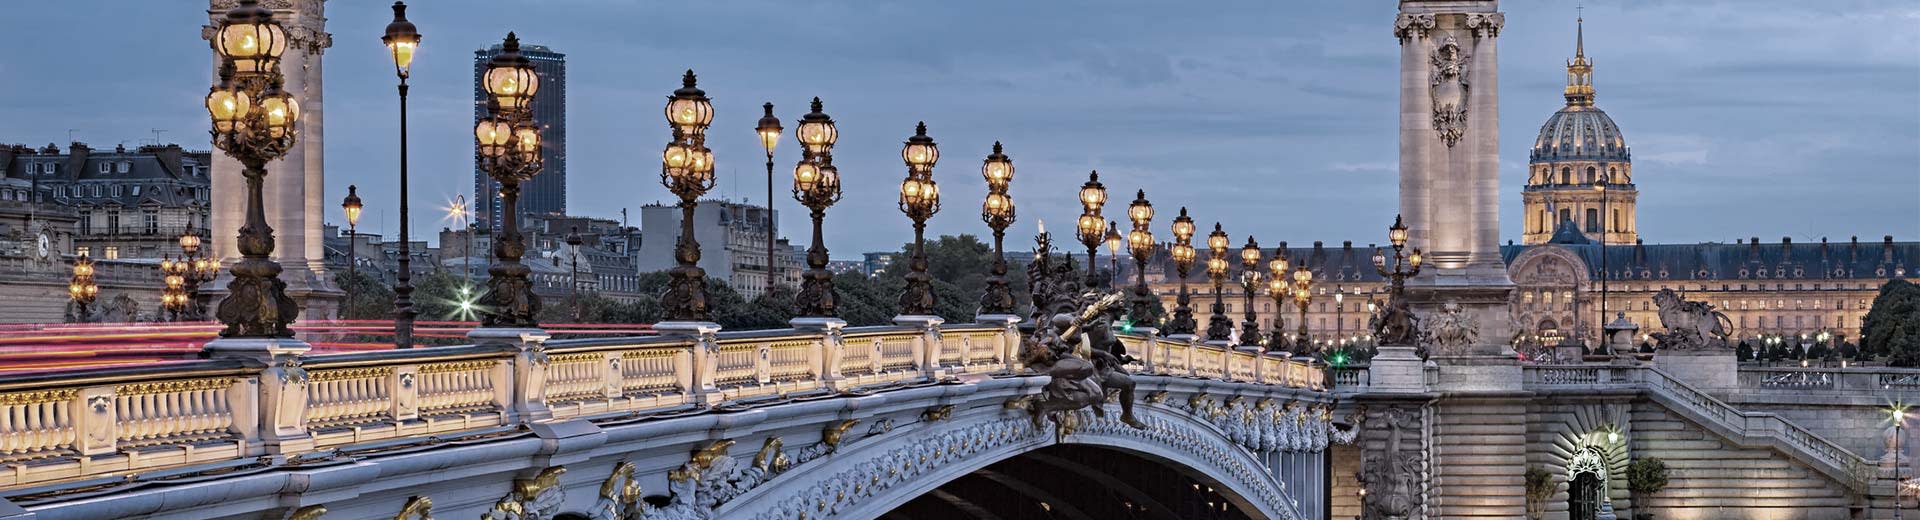 Eine schöne Brücke in Paris im Licht von Dämmerung oder Morgendämmerung.